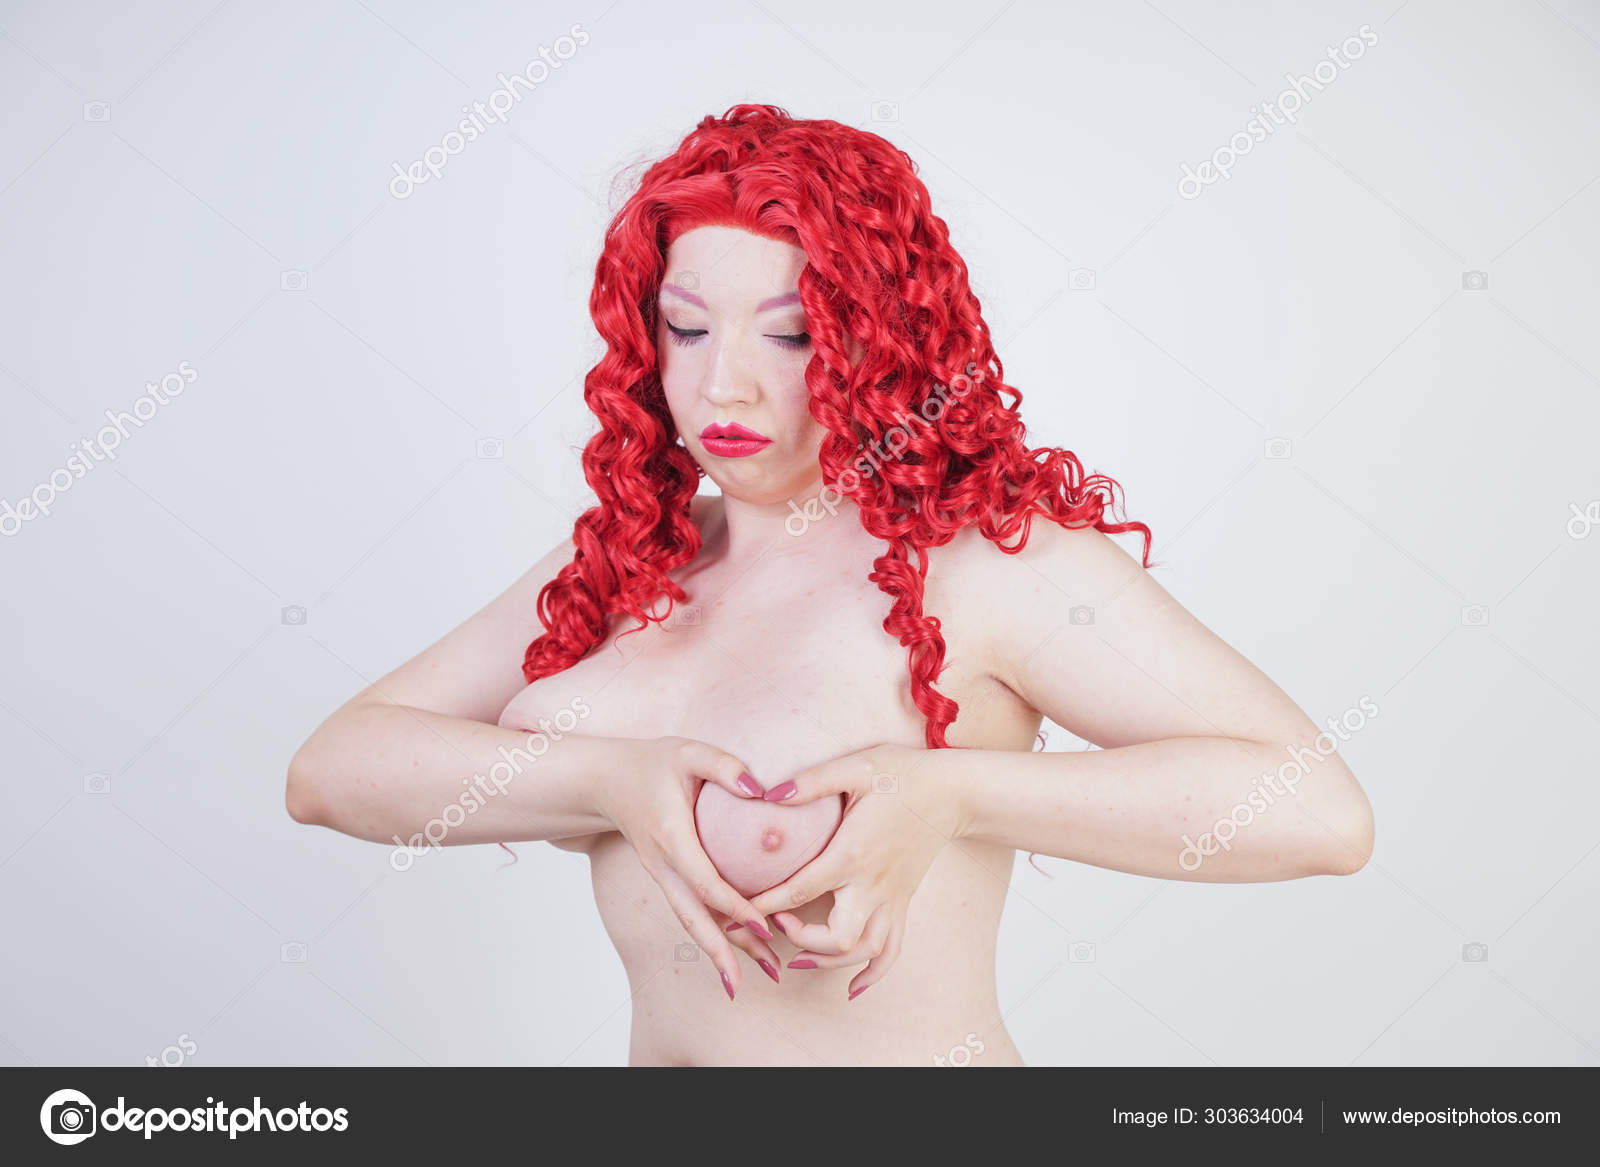 https://st4n.depositphotos.com/1091519/30363/i/1600/depositphotos_303634004-stock-photo-young-beautiful-girl-posing-nude.jpg